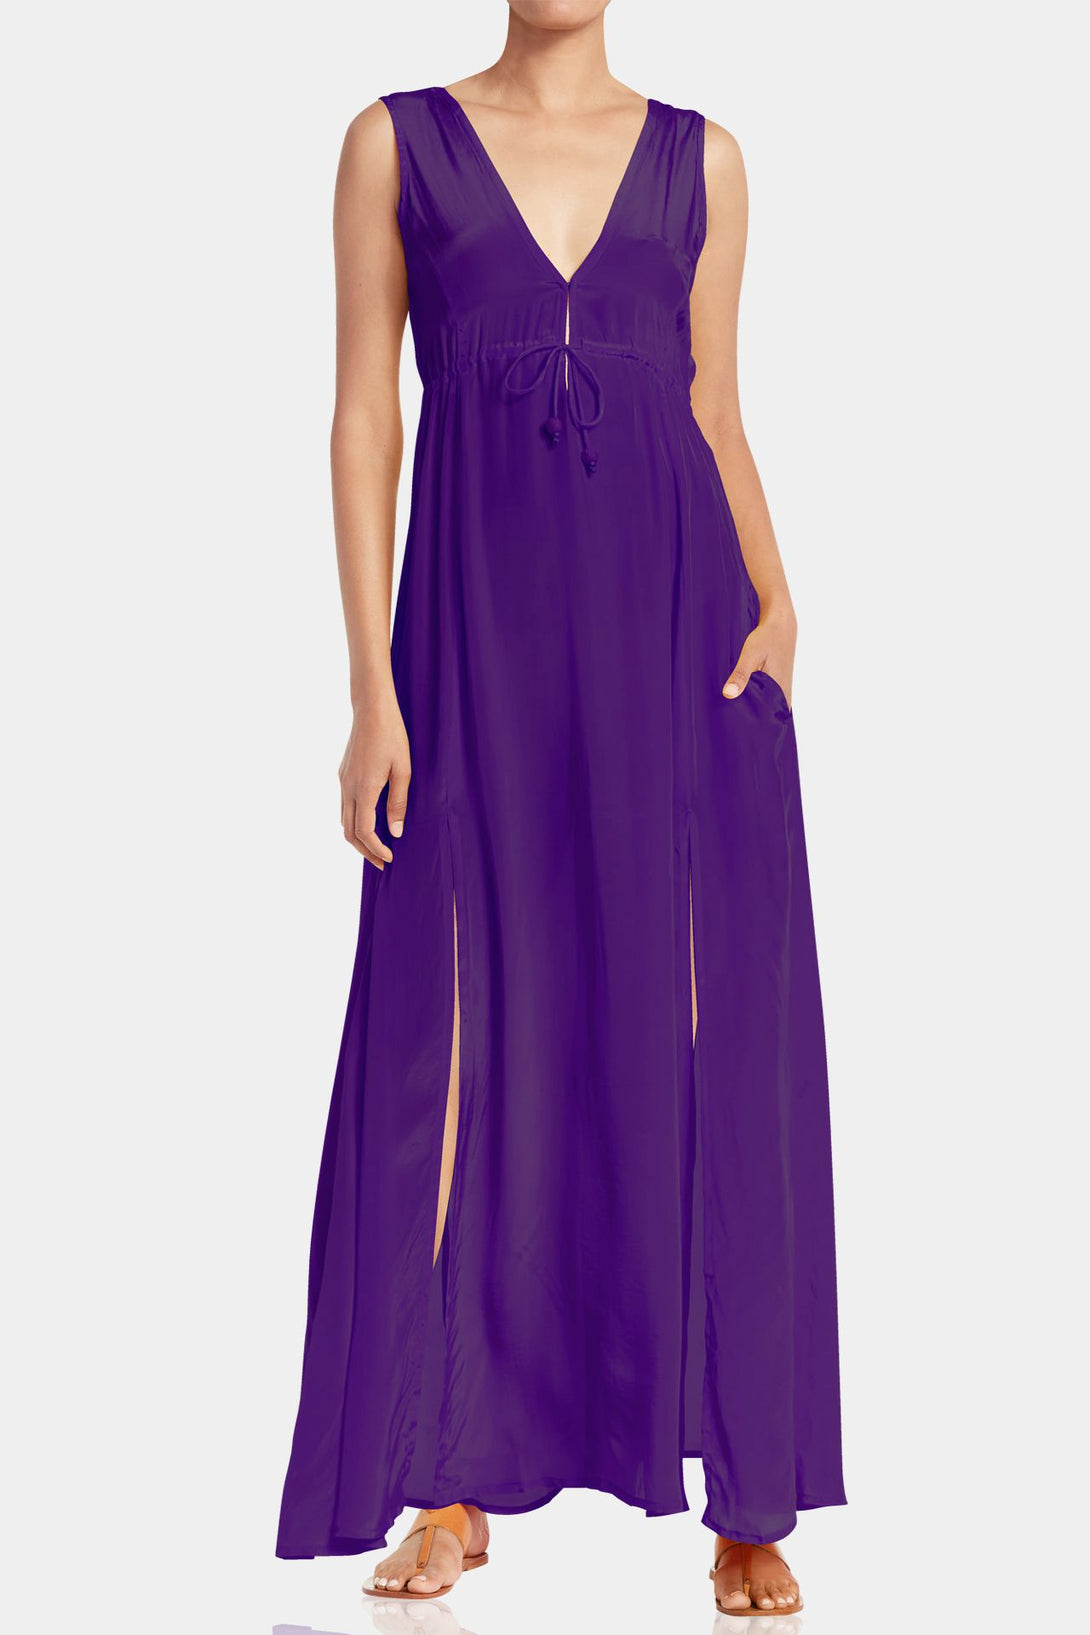 purple colour long dress, long summer dresses for women, plunge neck cocktail dress,